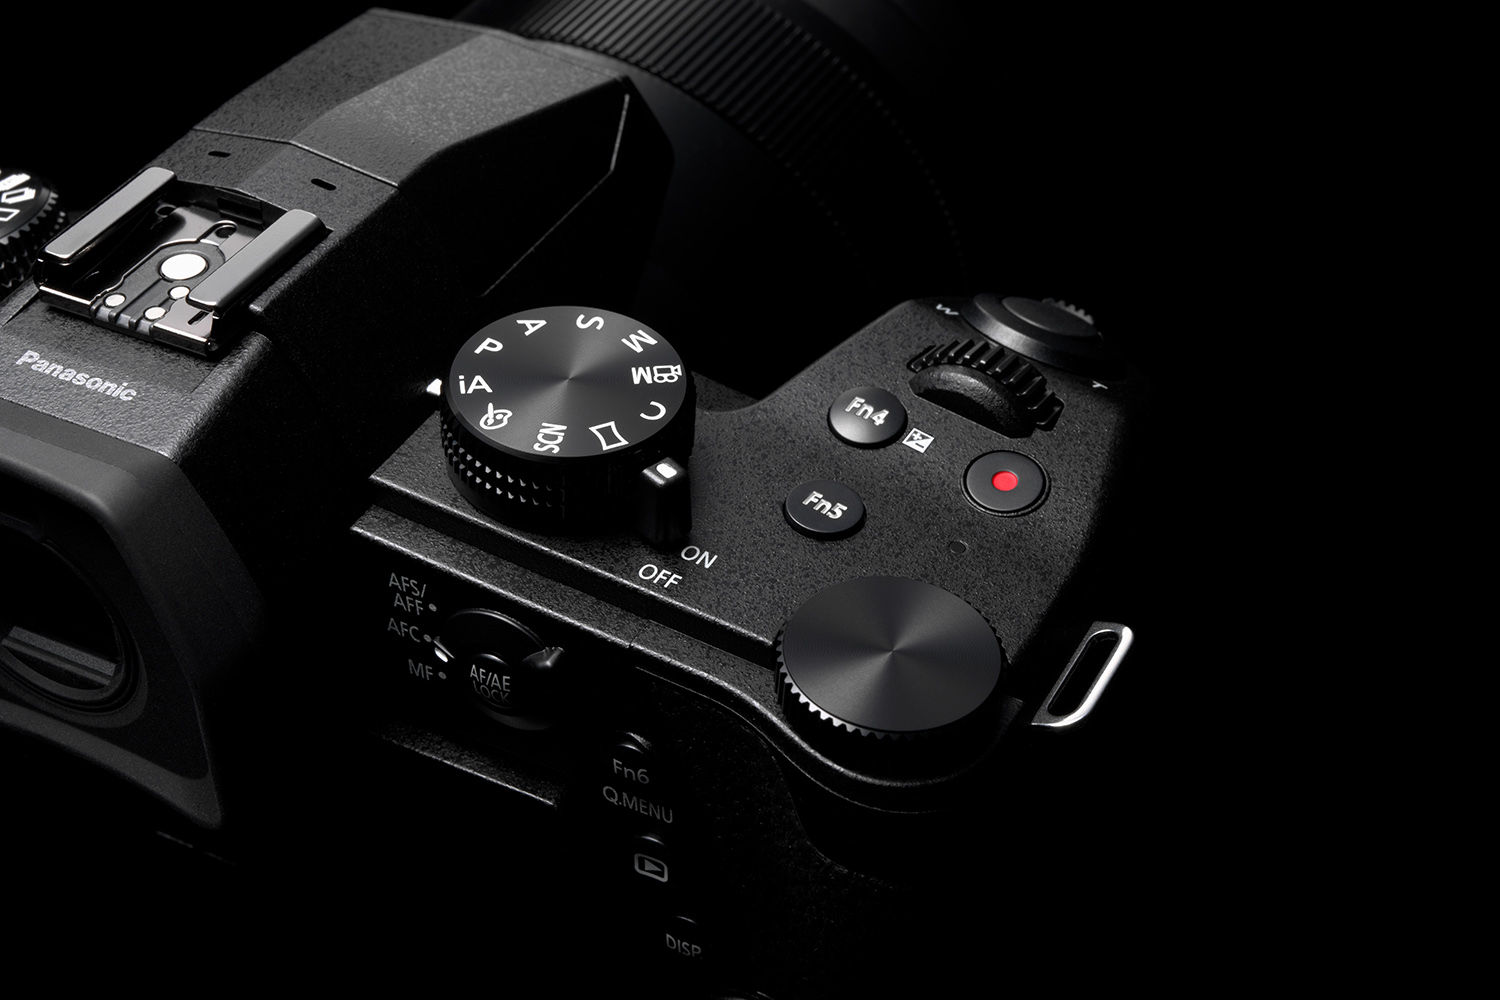 Guide til kameraene: Her får du kontroll på de ulike kameratypene |  Digital-foto.no